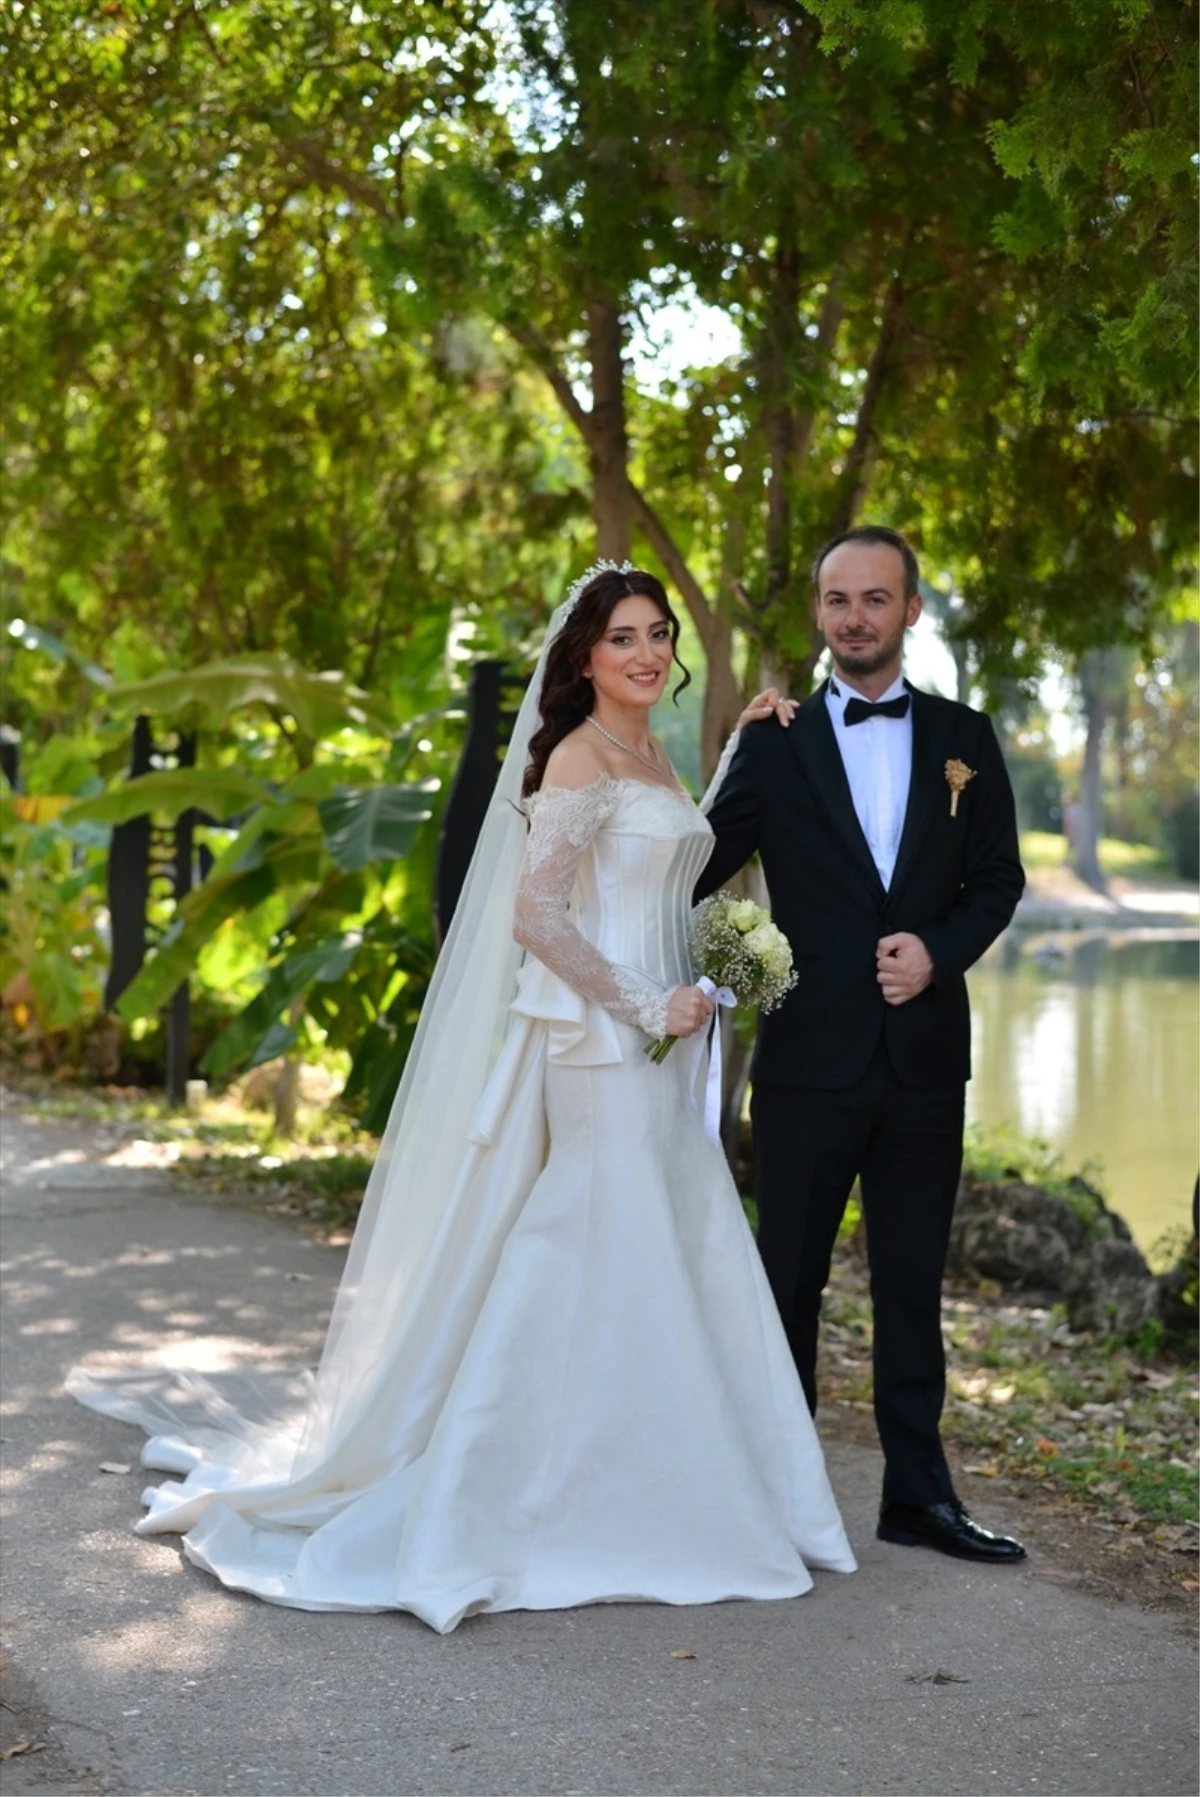 AGC İdari Koordinatörü Mediha Düden\'in oğlu Mert Düden, Aysu Sağlam ile evlendi